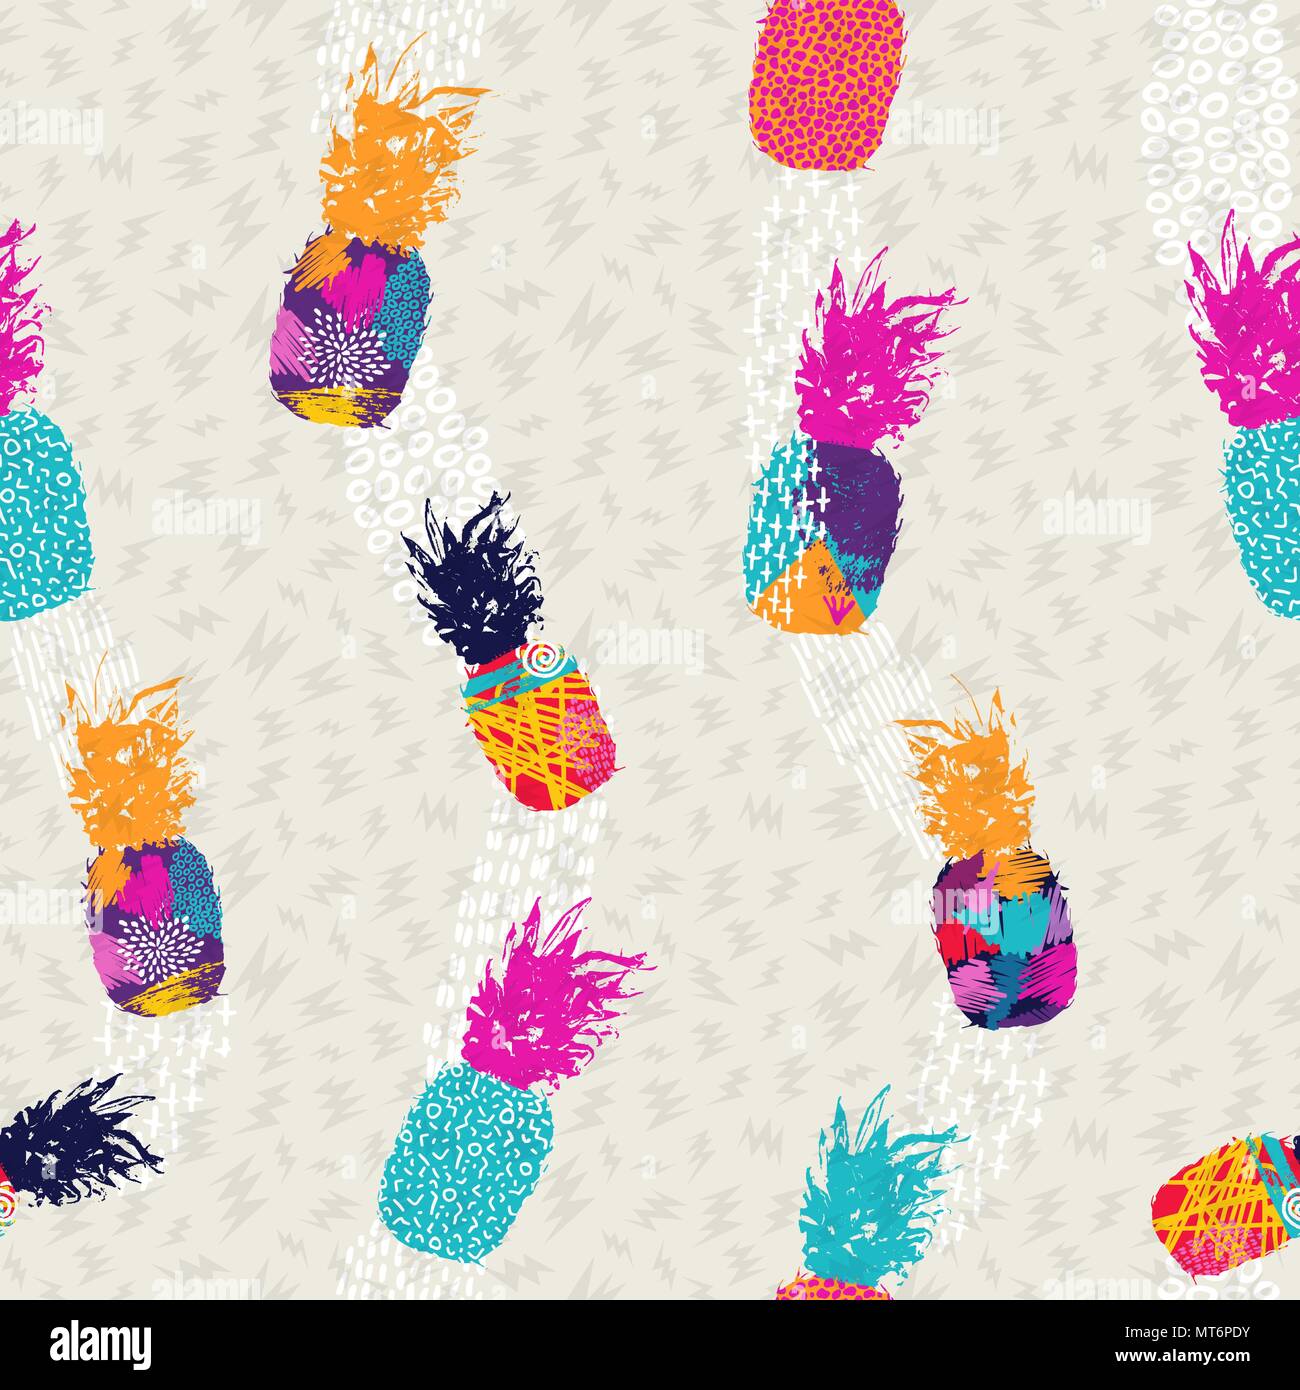 Estate seamless design pattern, ananas frutta con abstract colorata arte ideale per divertimento fashion stampa di carta o tessuto. EPS10 vettore. Illustrazione Vettoriale